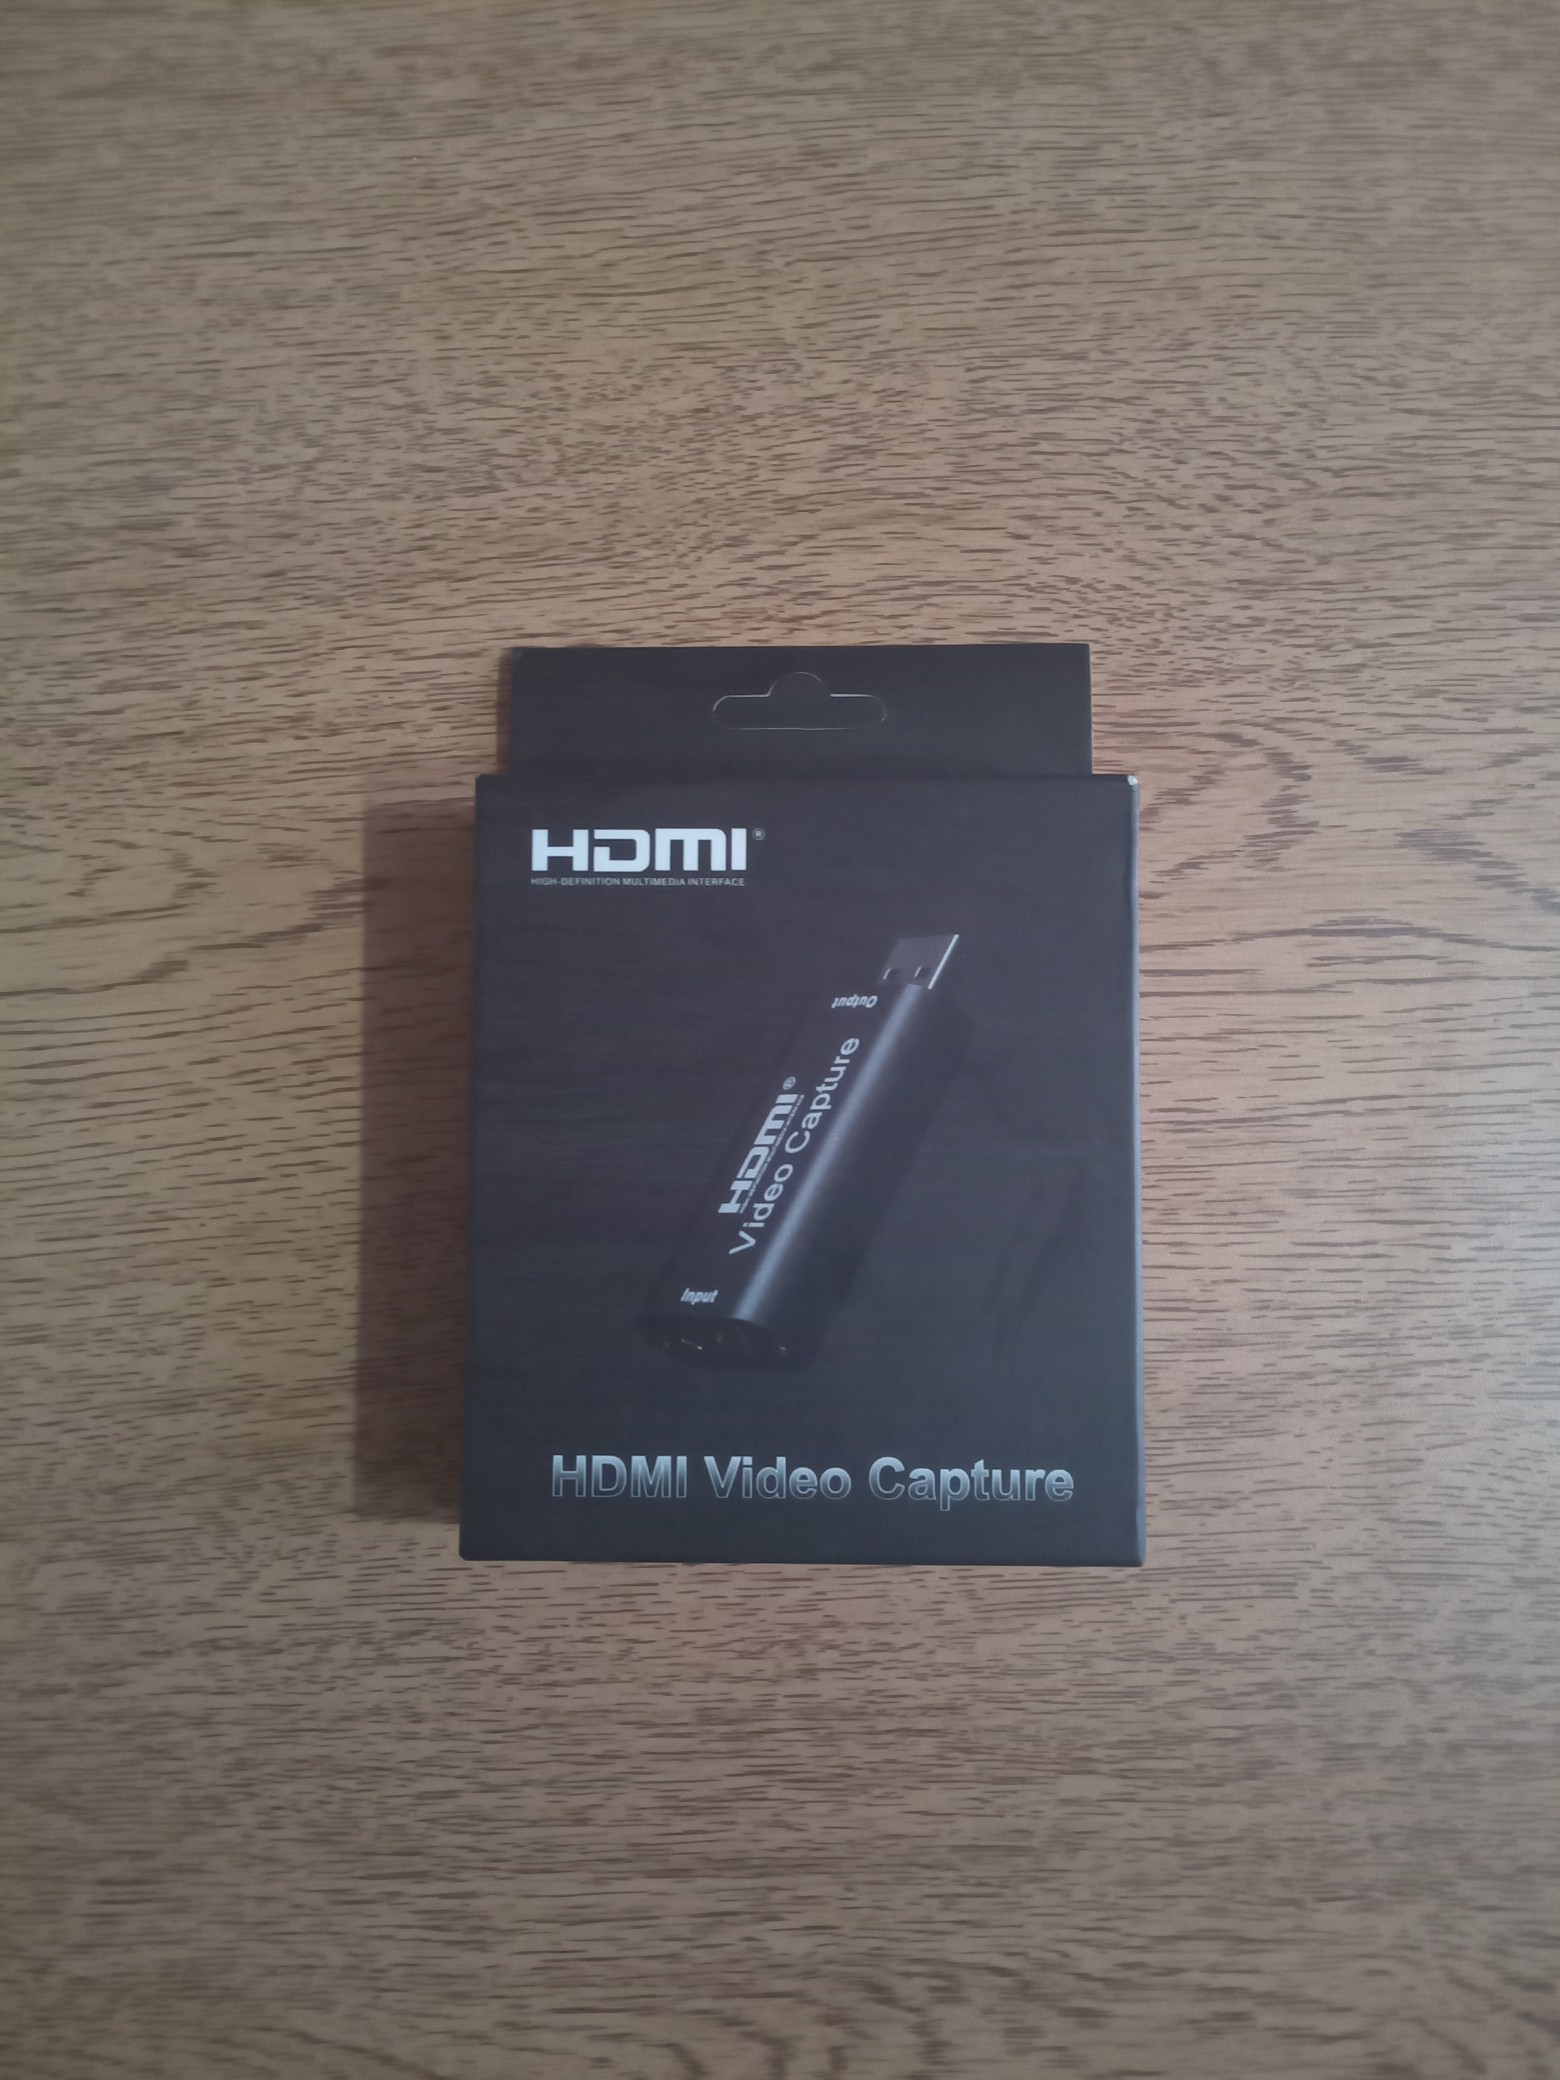 camaras y audio - Captura de video HDMI